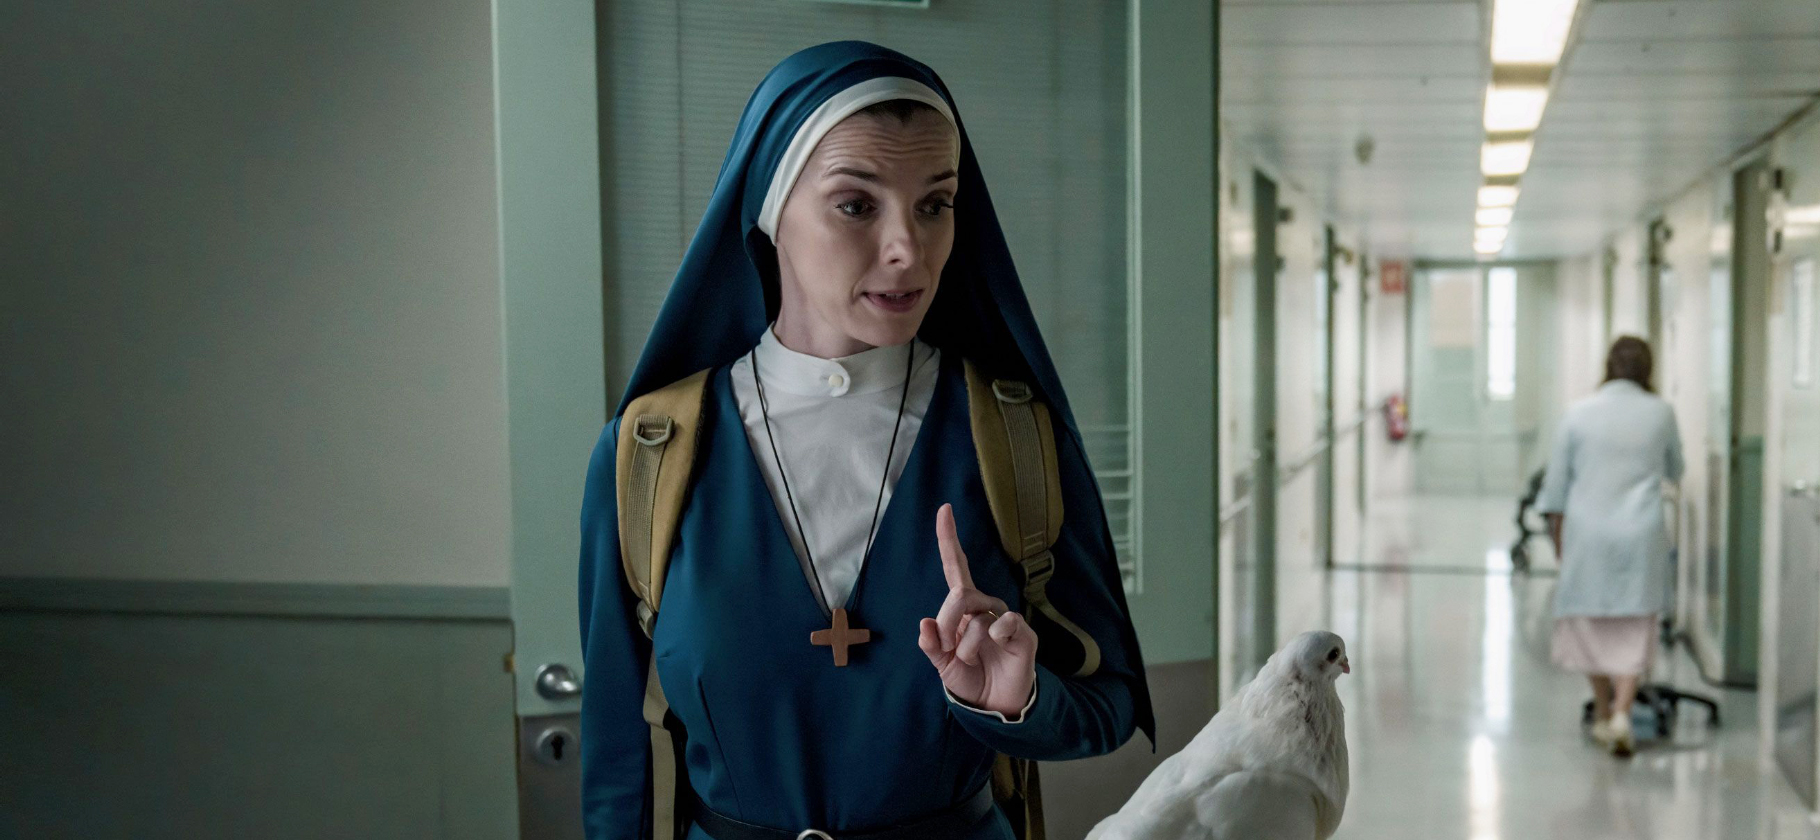 «Миссис Дэвис»: зачем смотреть сериал о противостоянии монахини и искусственного интеллекта